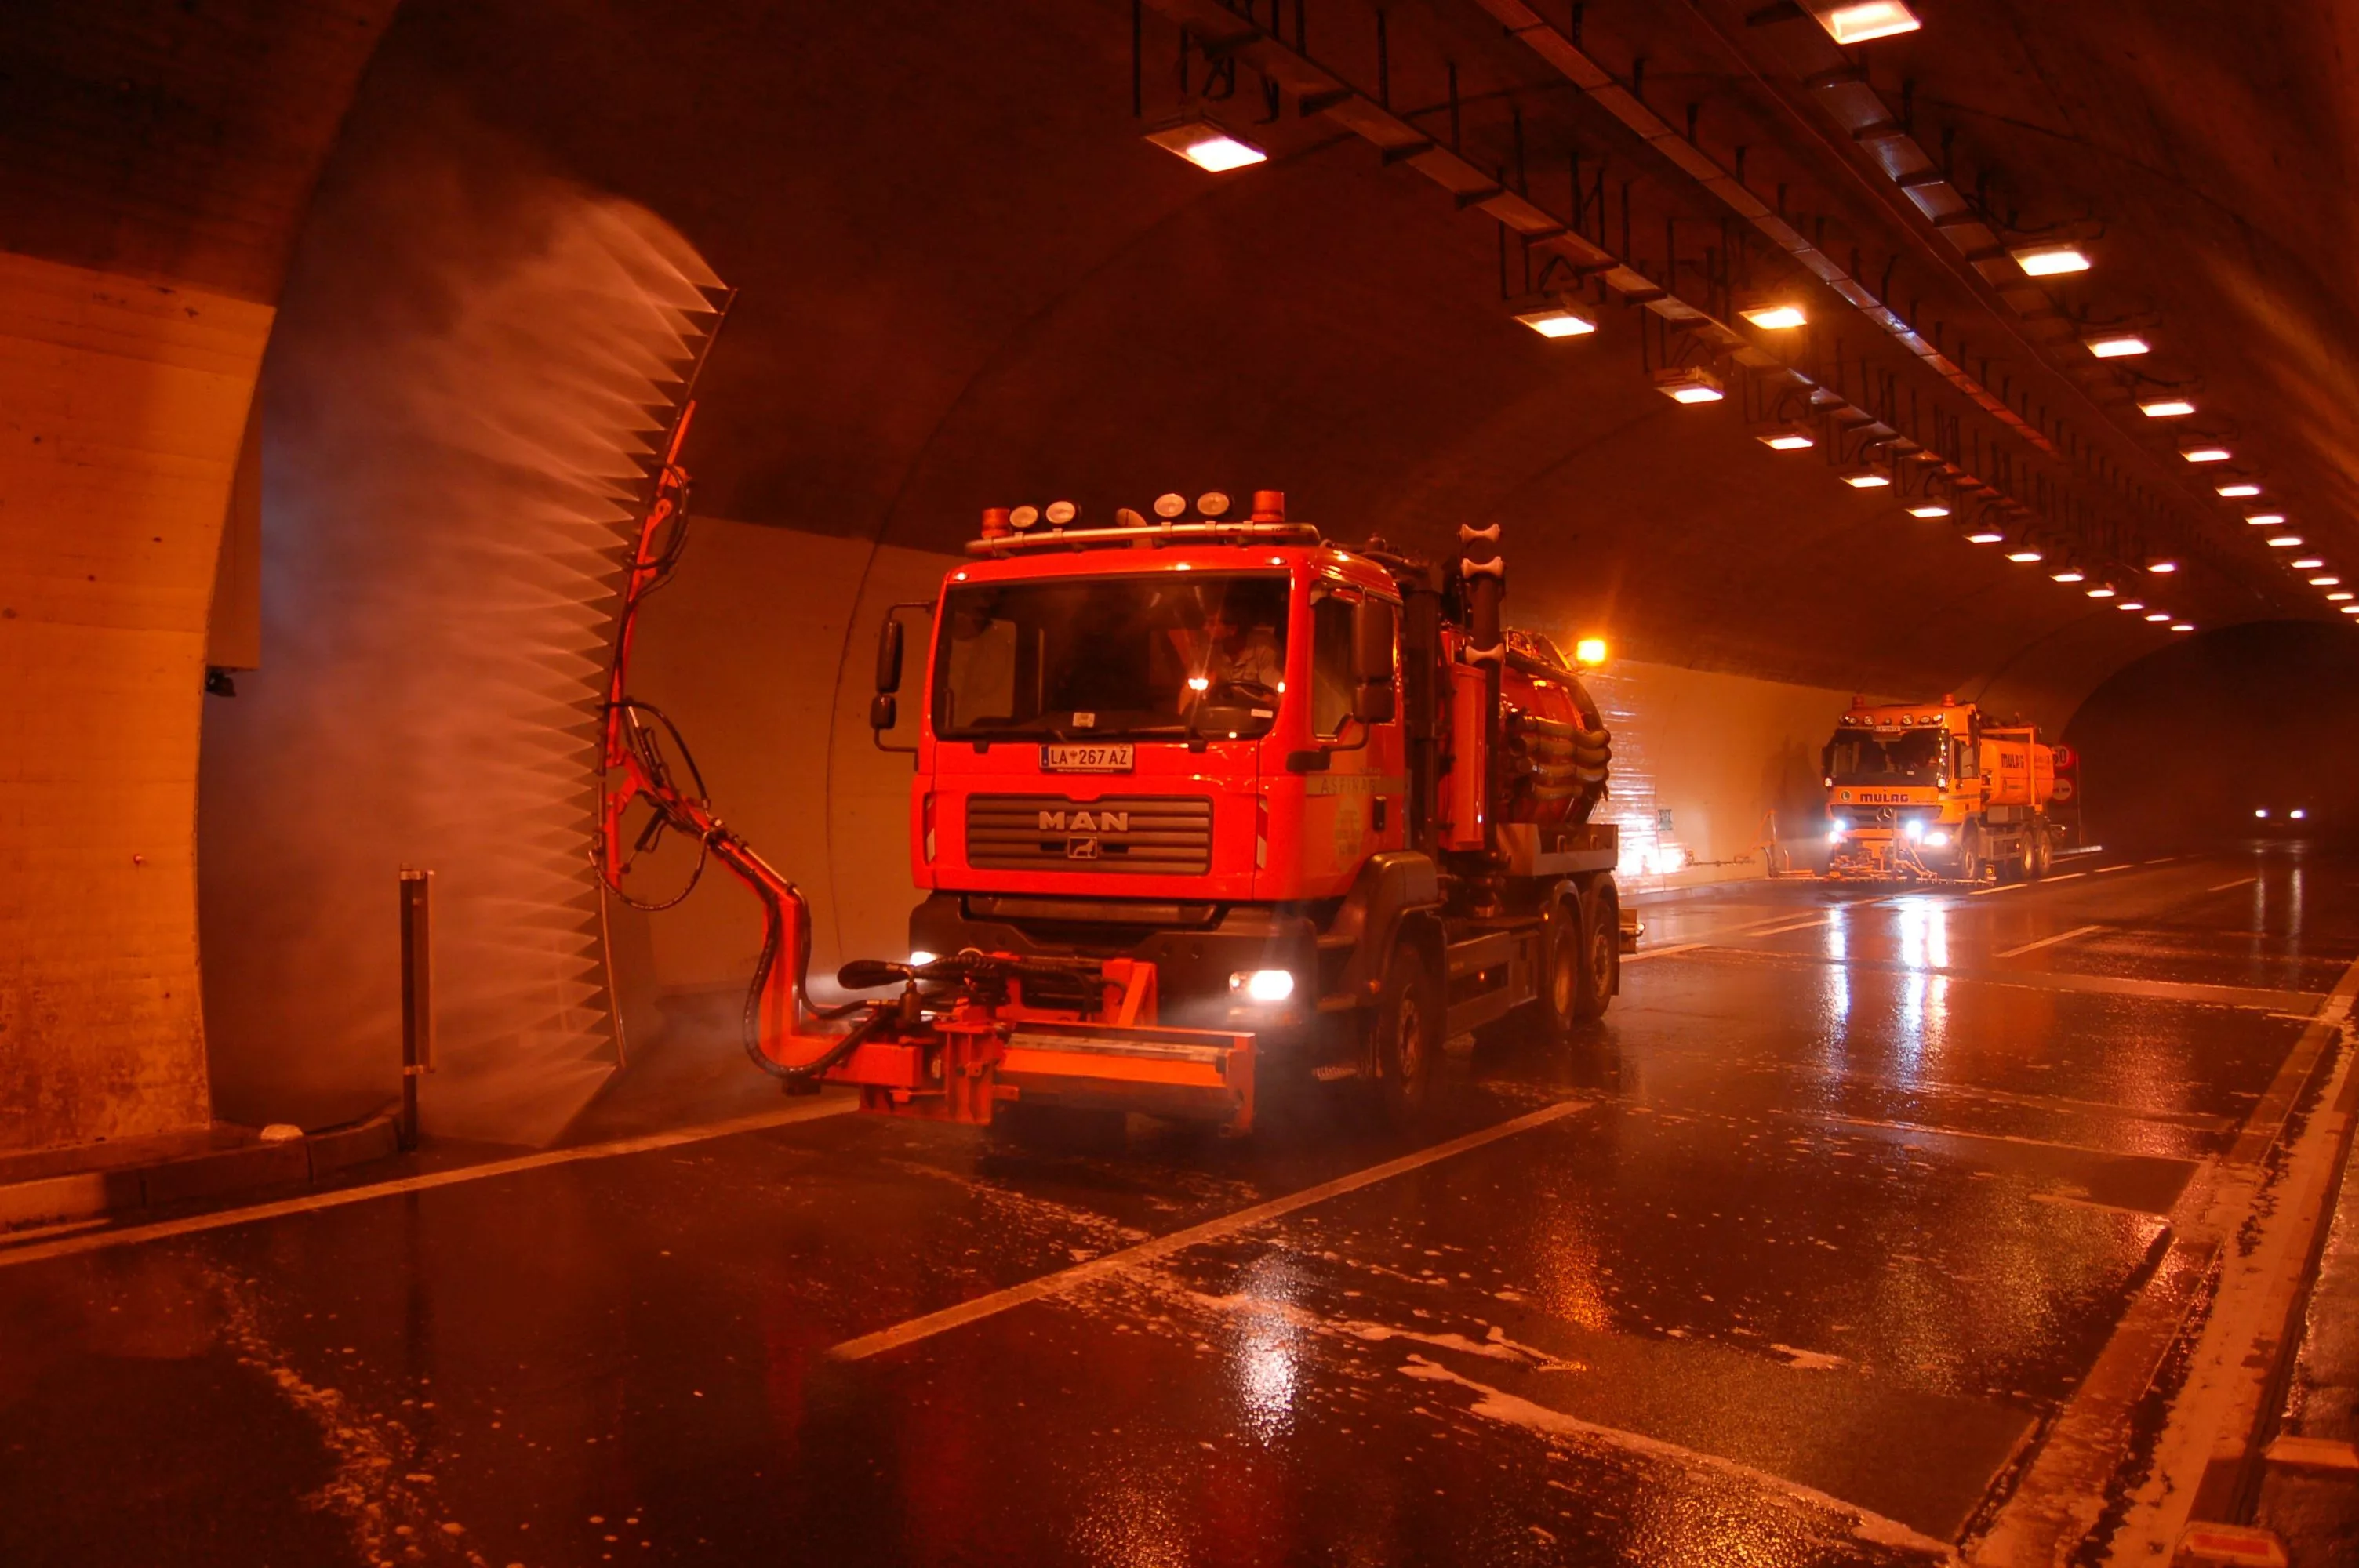 Ein Lkw fährt durch einen Tunnel und besprüht die Tunnelwand mit Wasser